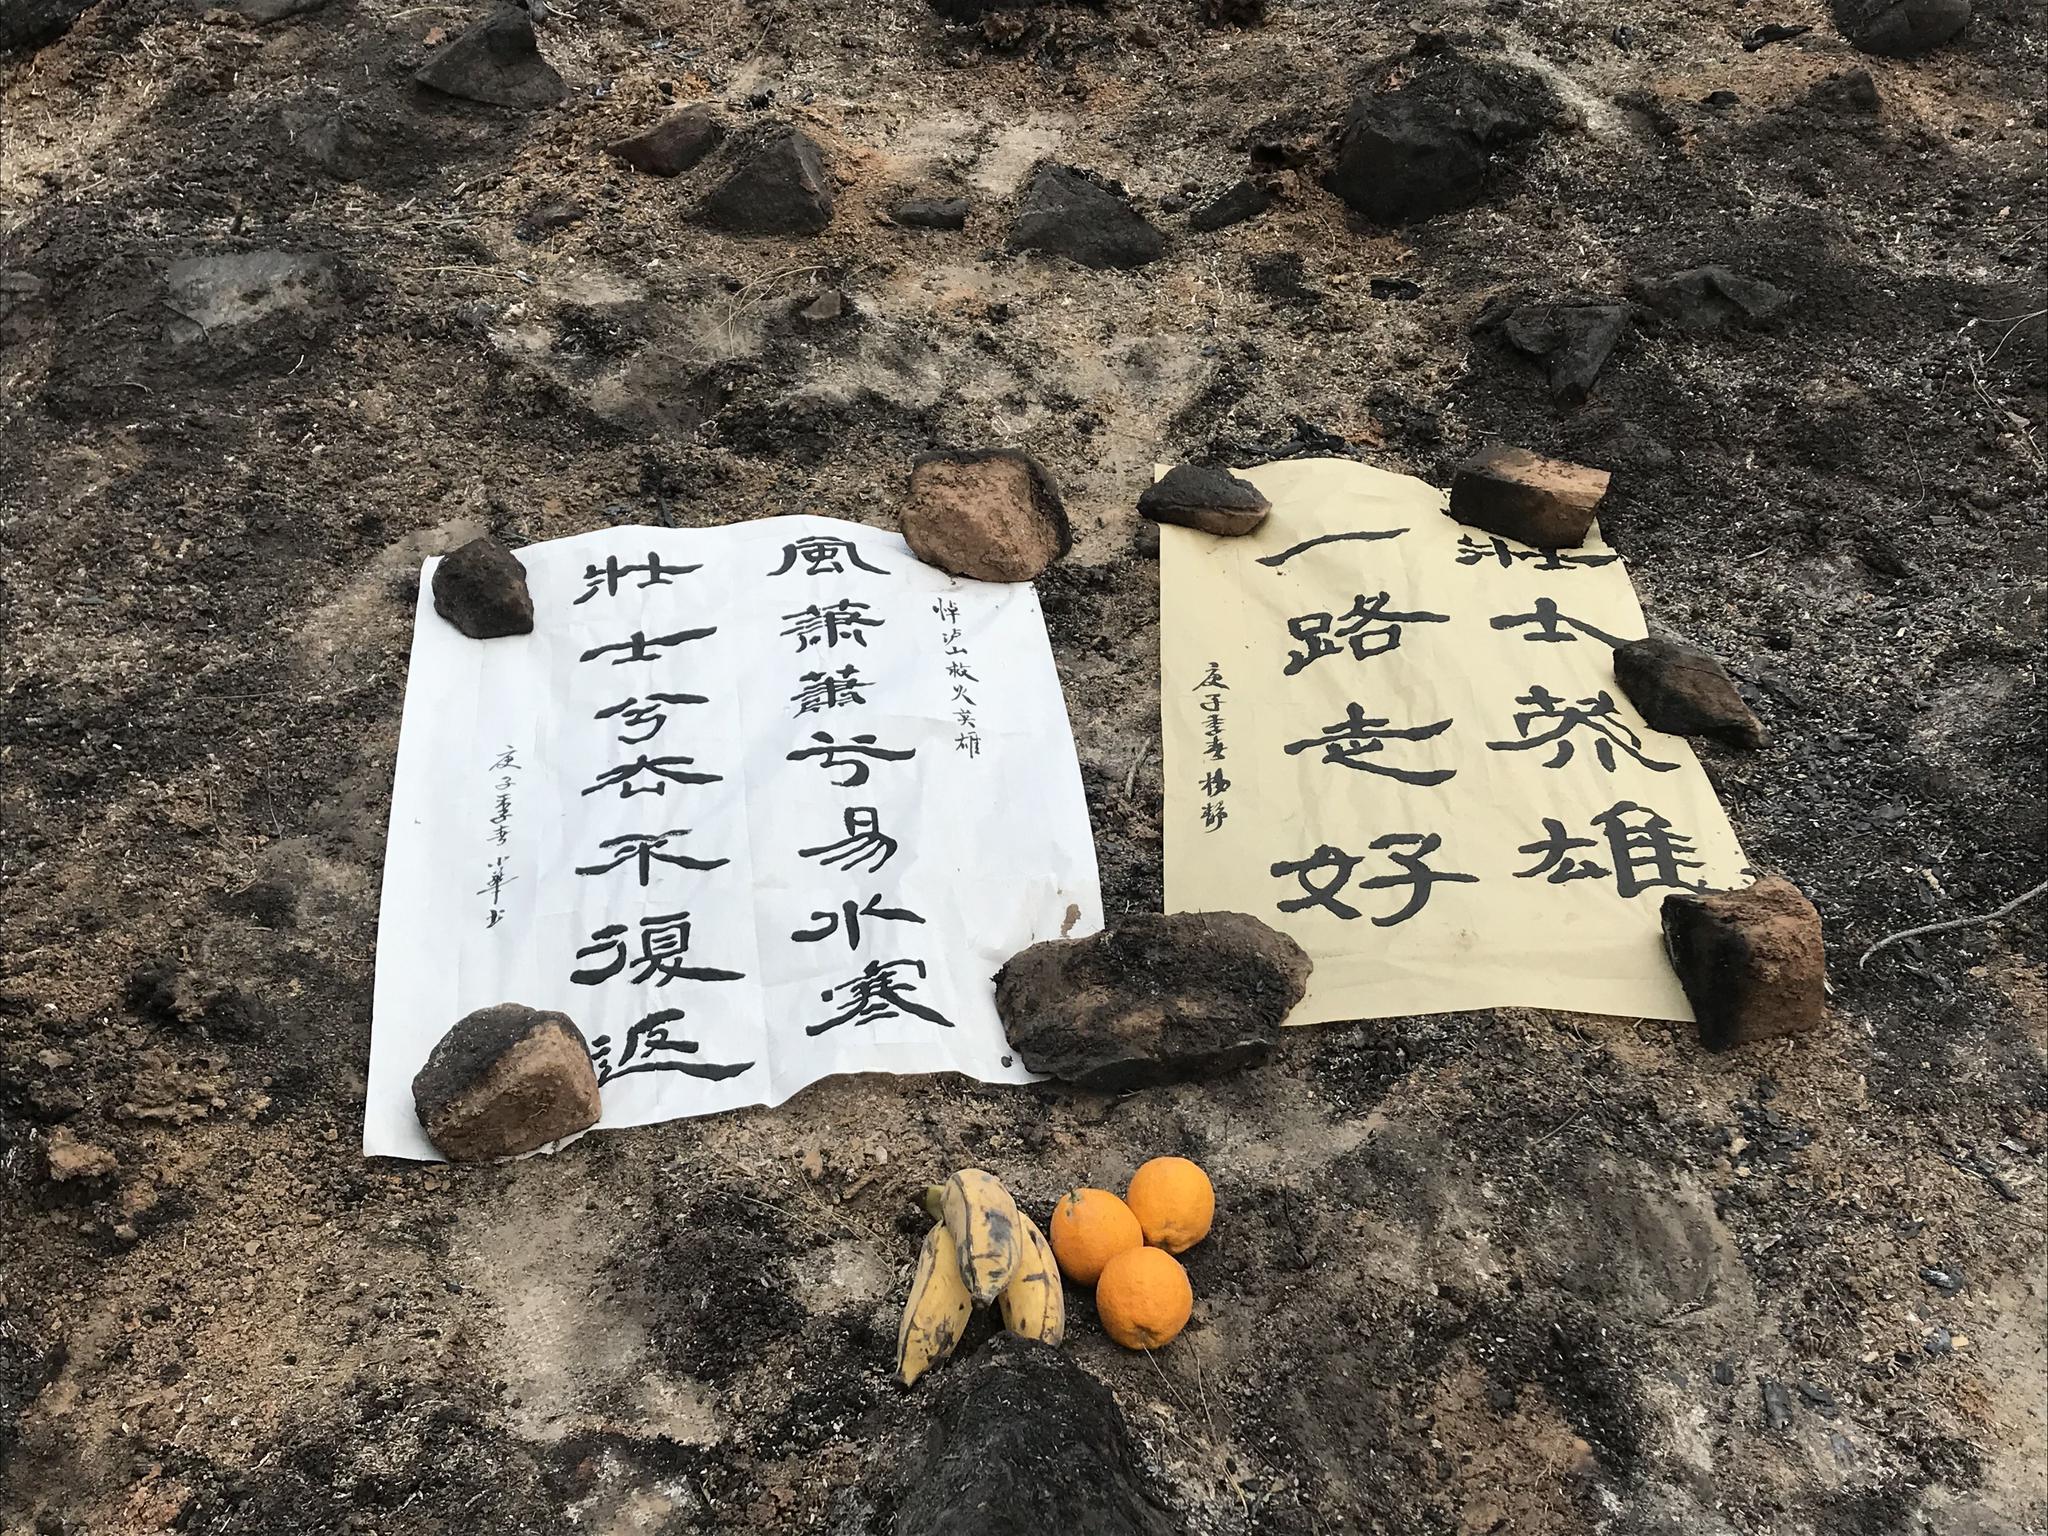 大火熏黑的山坡上，摆放着群众的悼念挽联。新京报记者 王昱倩 摄